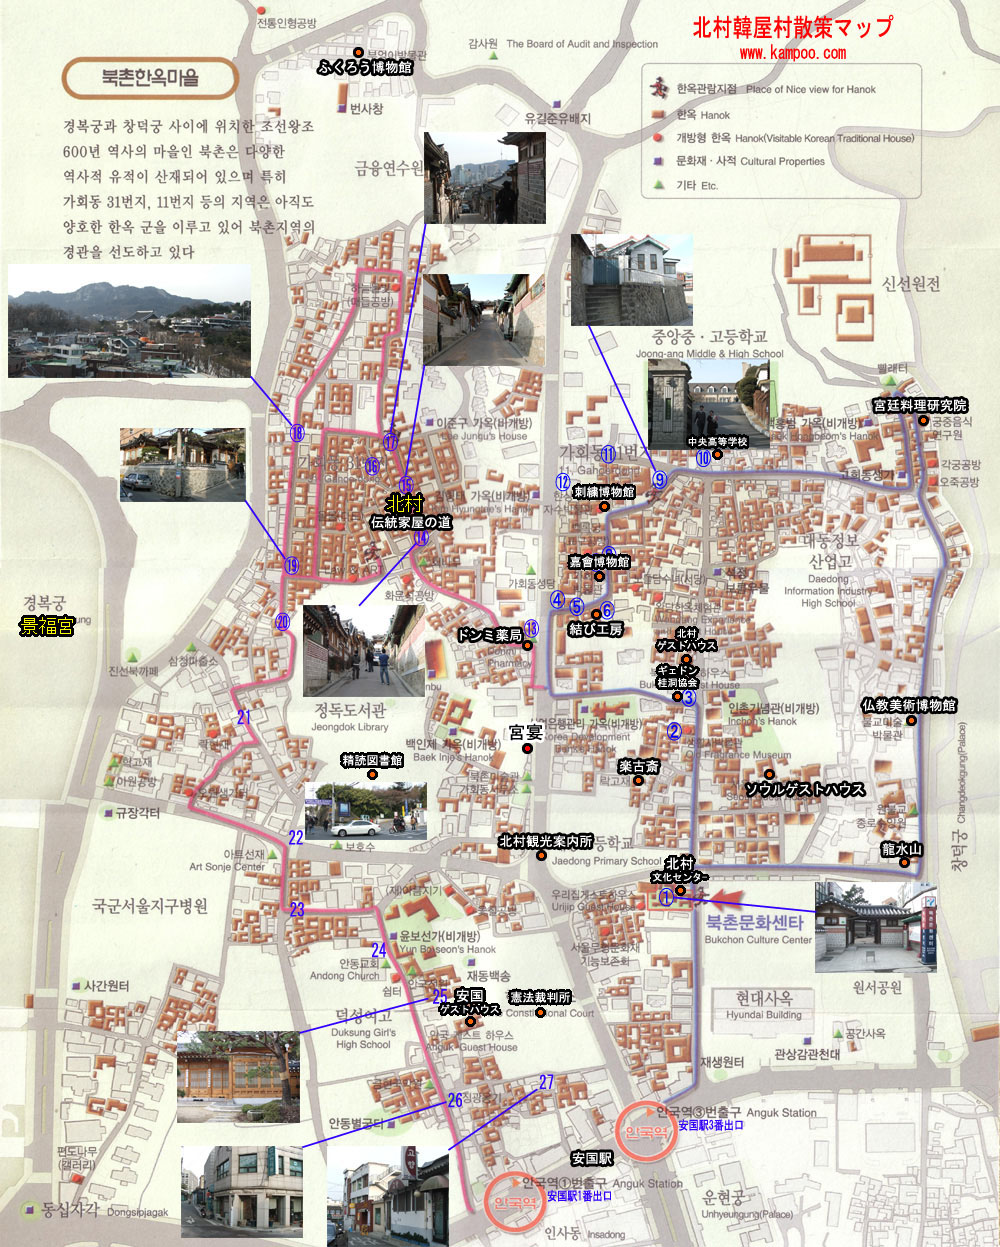 北村韓屋村散策マップ